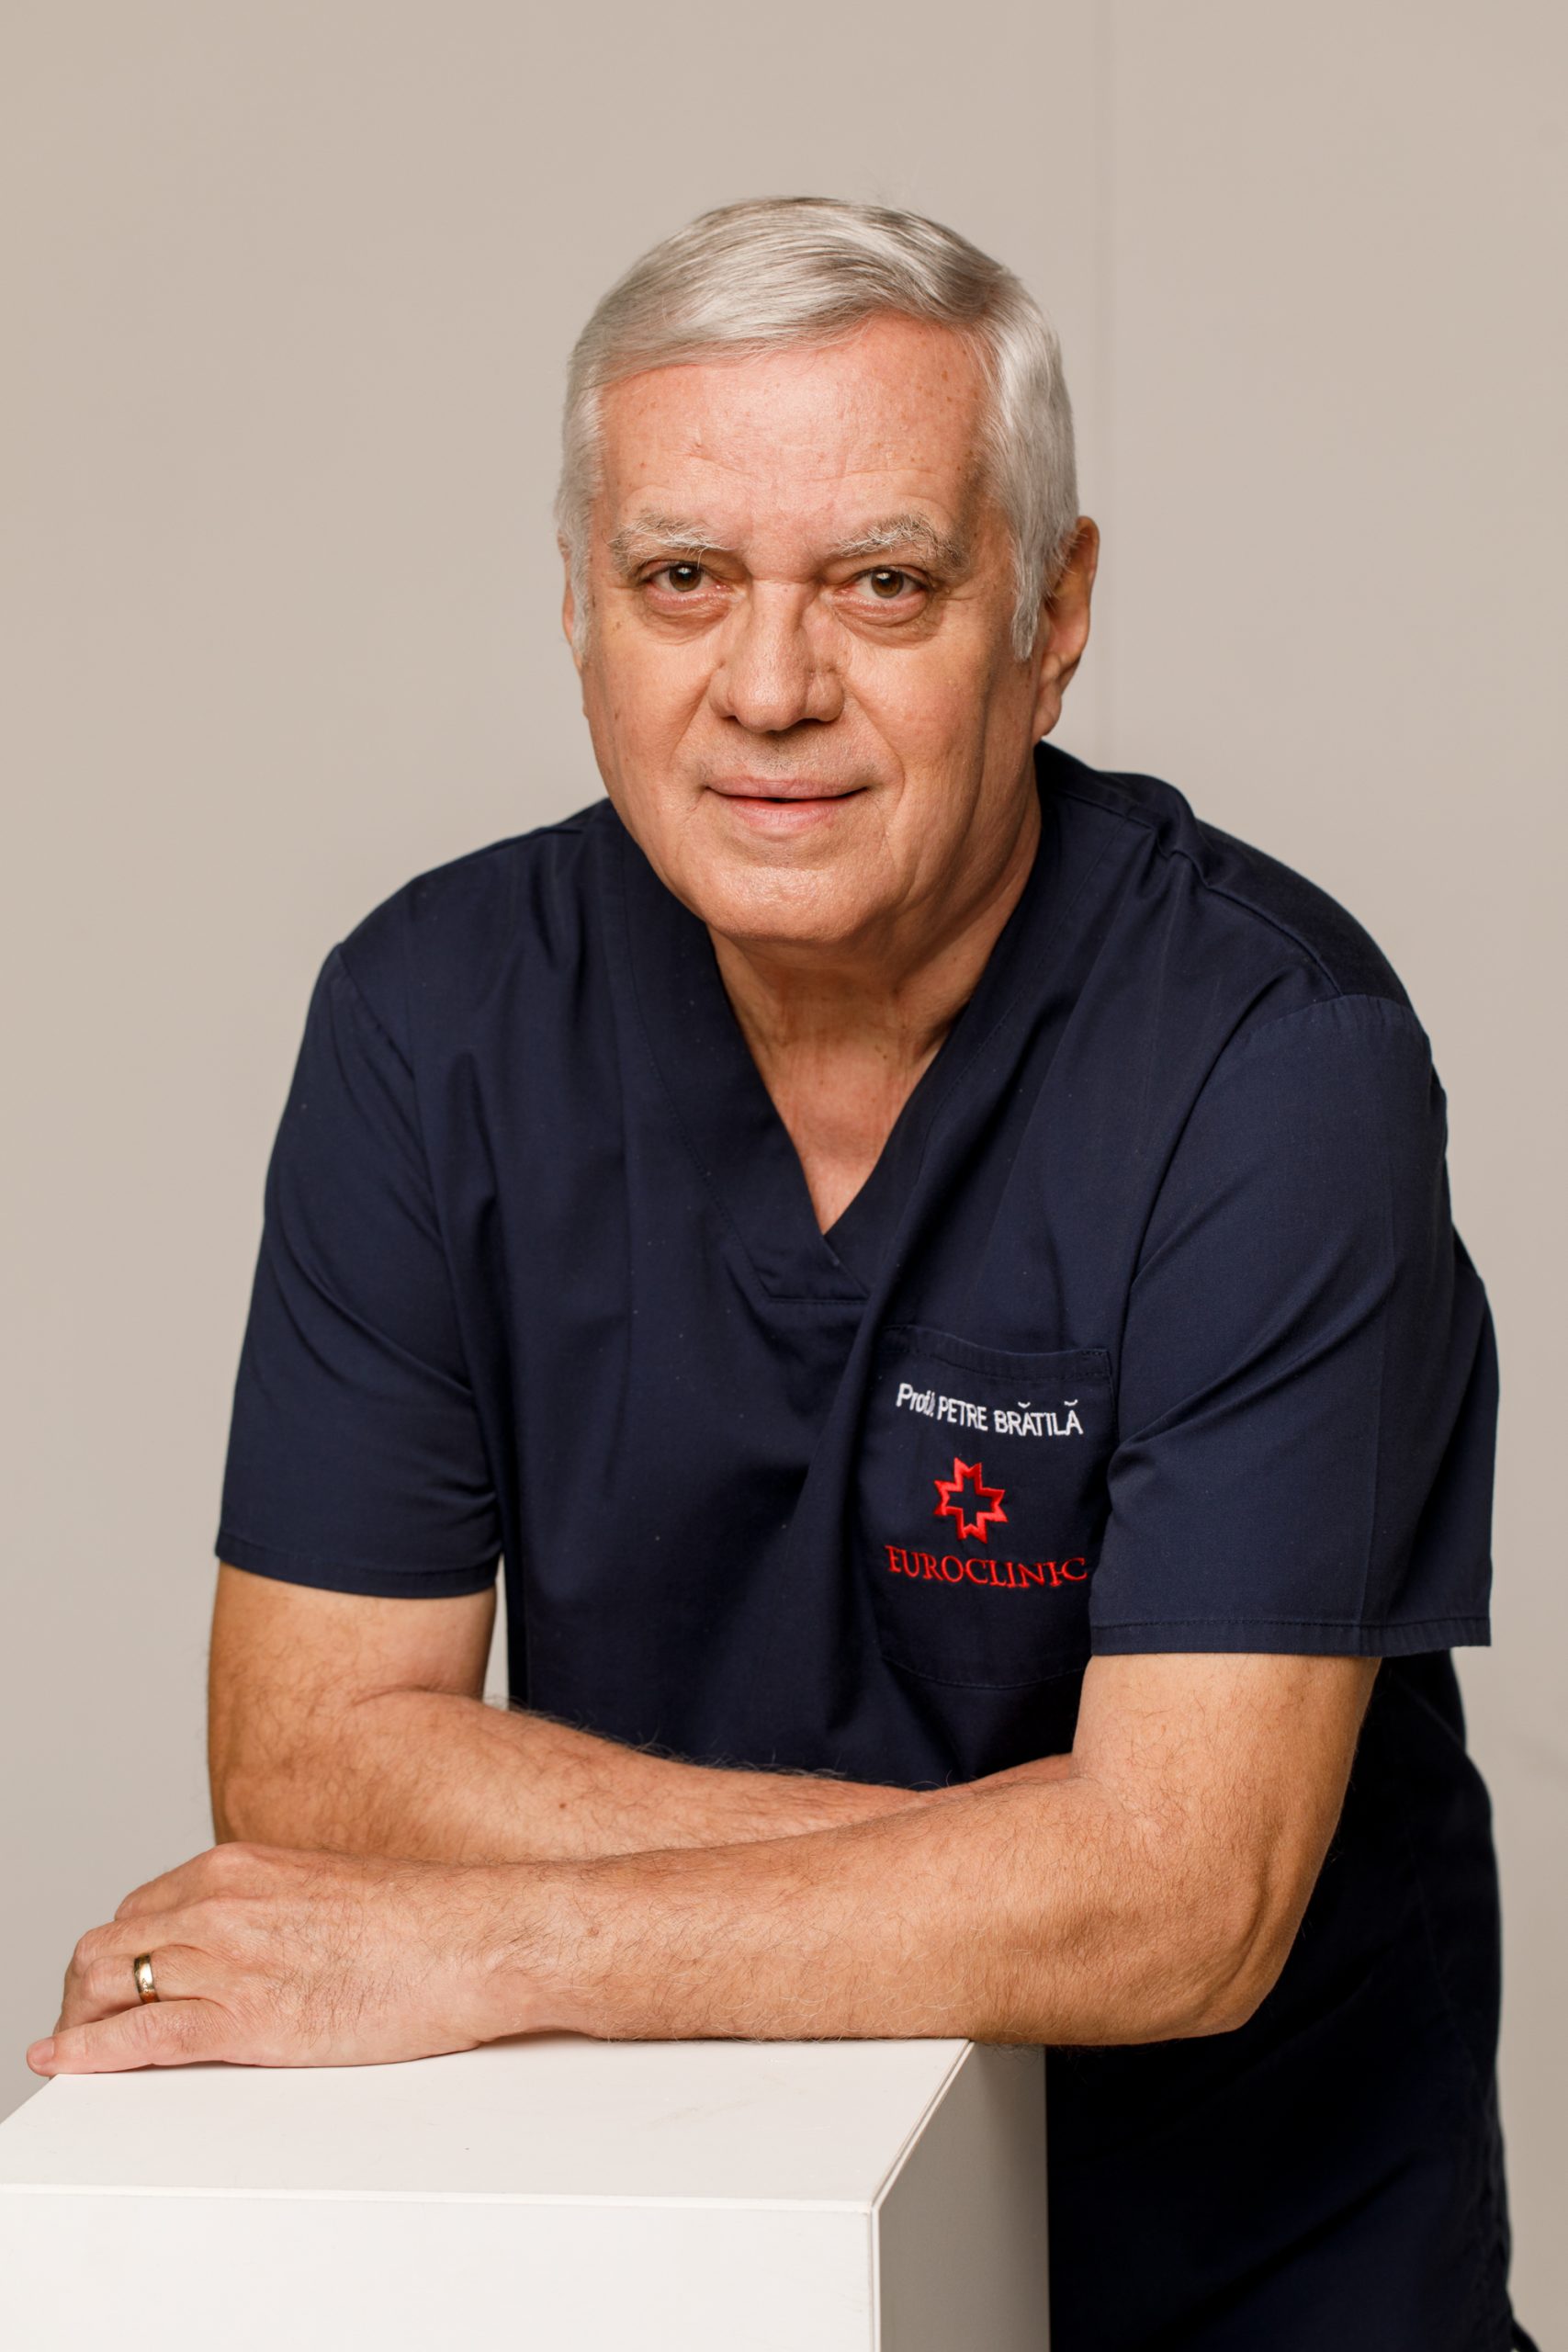 Curs de Excelență în Histerectomia vaginală organizat sub coordonarea Prof. Dr. Petre Brătilă, Chirurg de Excelență în Ginecologia Minim-Invazivă